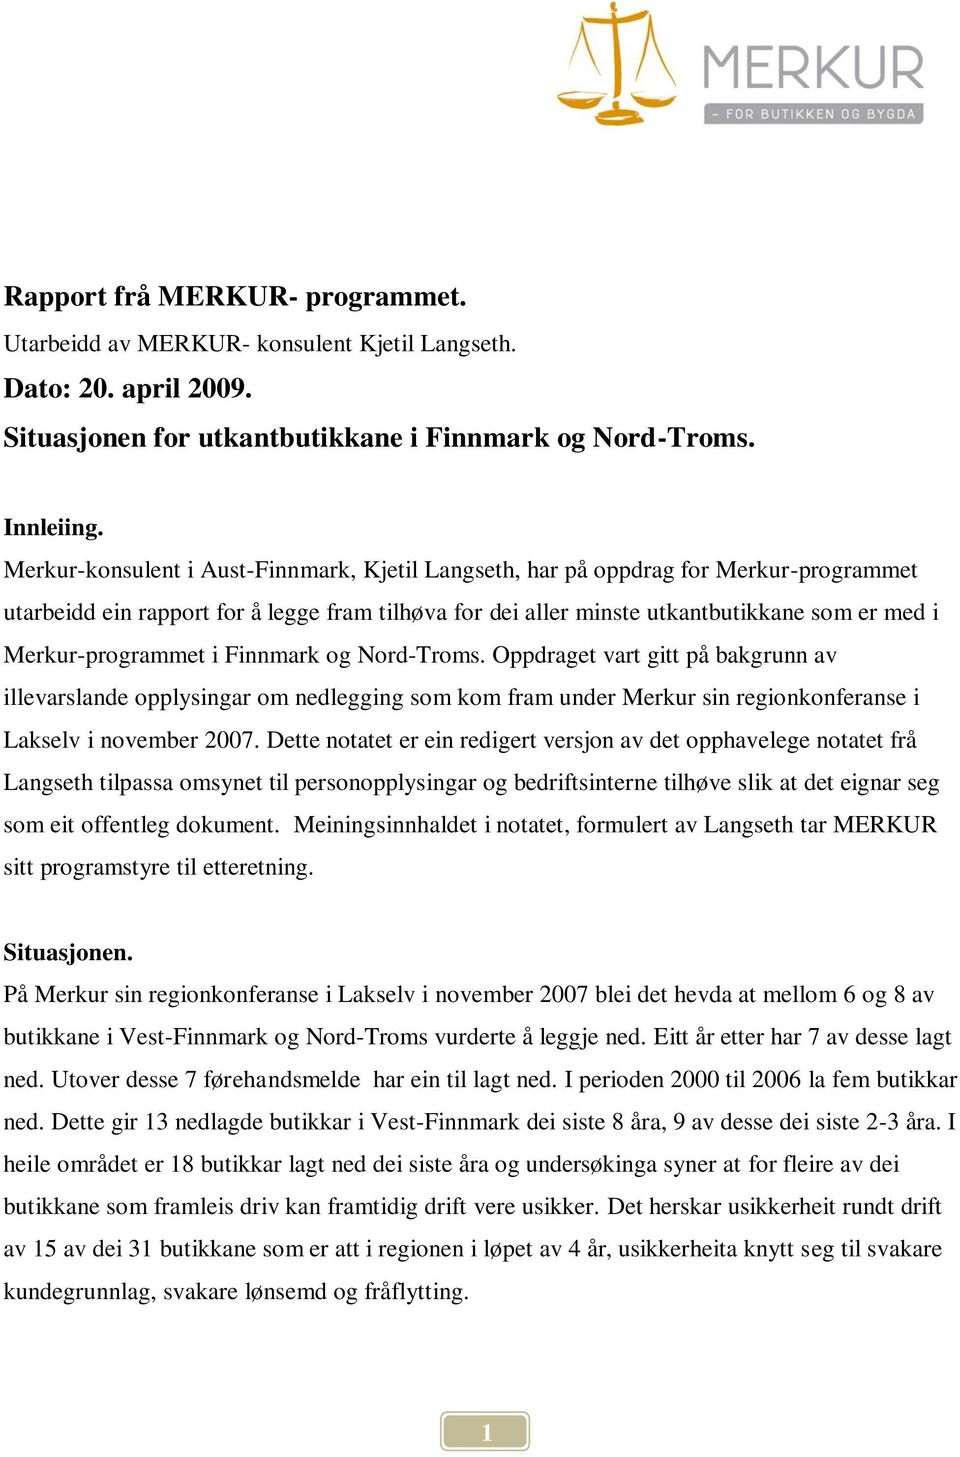 Merkur-programmet i Finnmark og Nord-Troms. Oppdraget vart gitt på bakgrunn av illevarslande opplysingar om nedlegging som kom fram under Merkur sin regionkonferanse i Lakselv i november 2007.